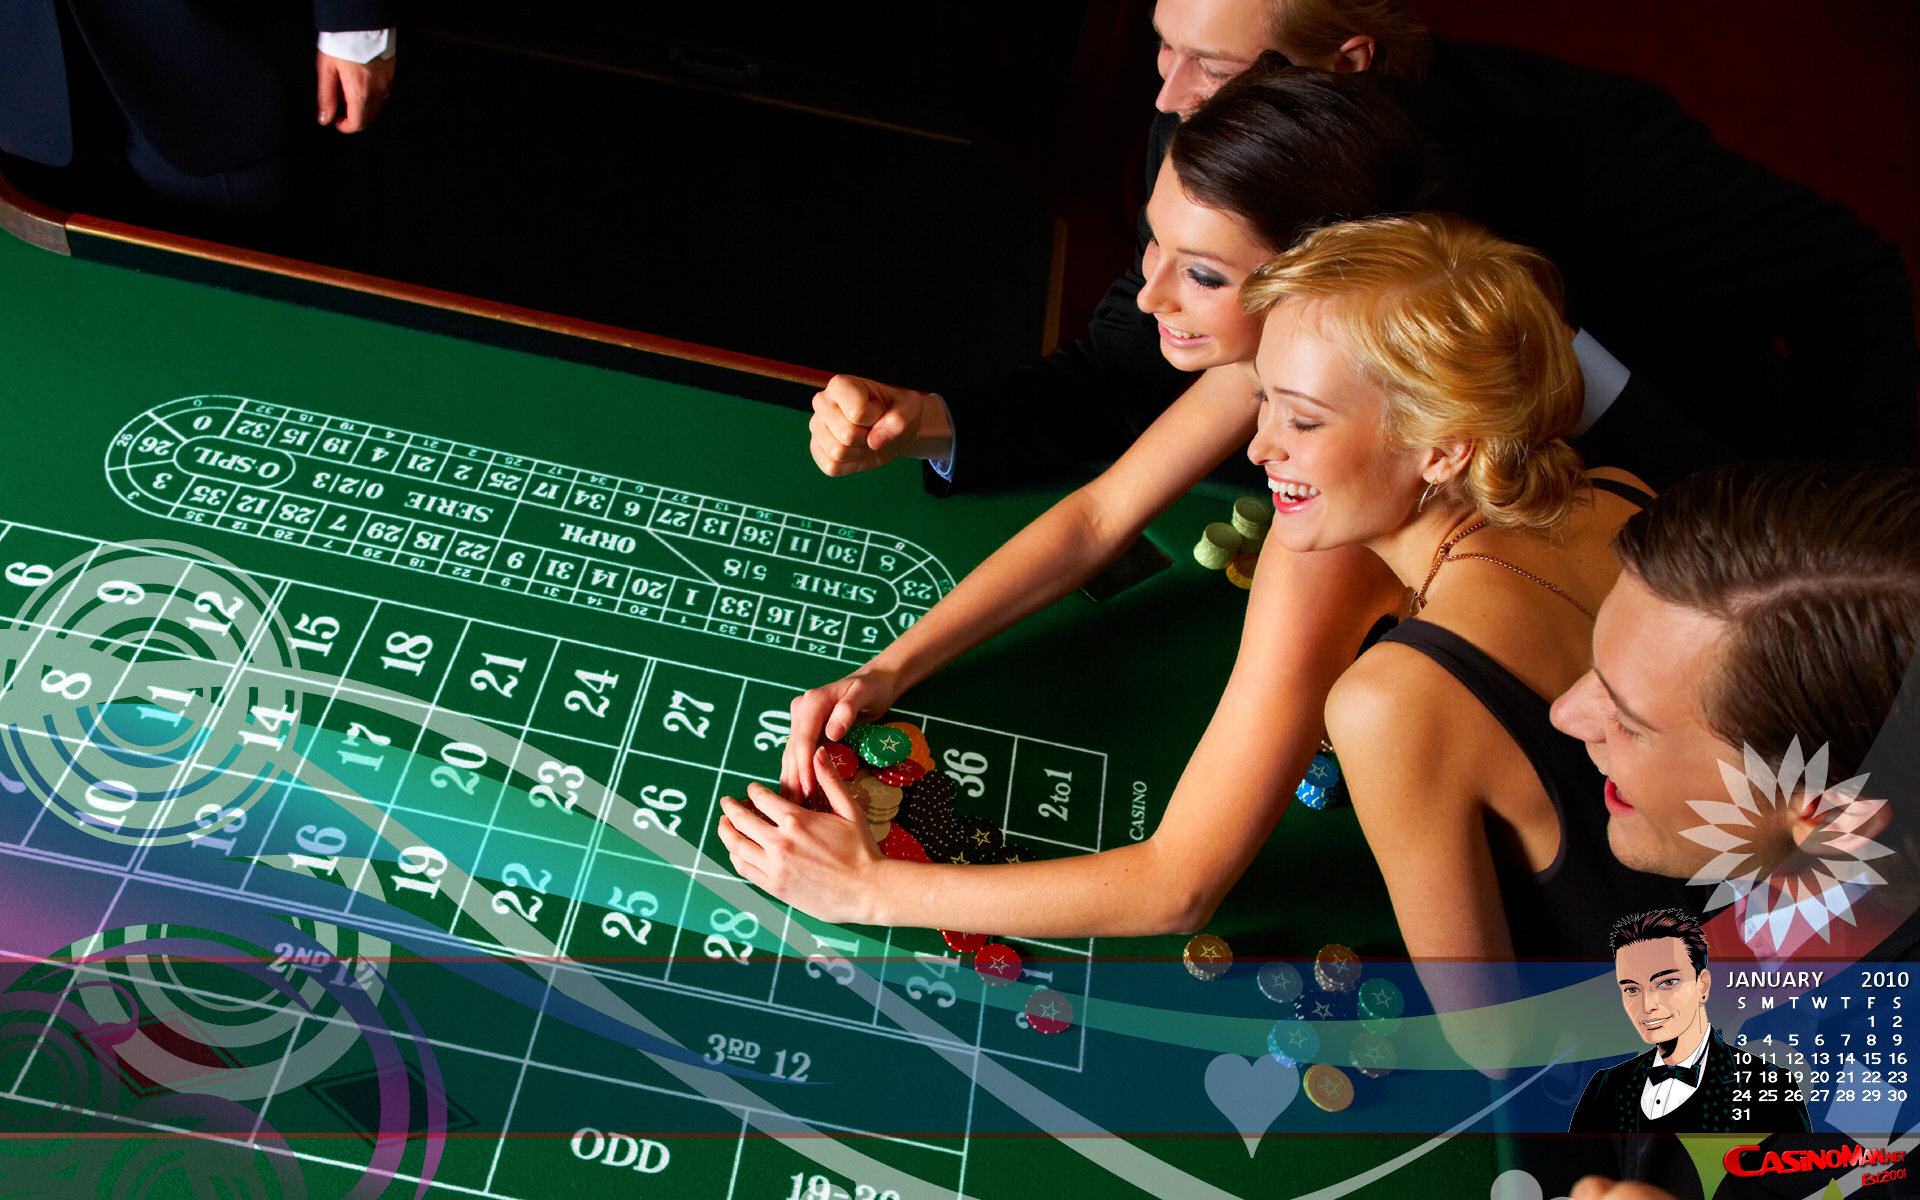 Policies Regarding Casino Meant To Be Broken